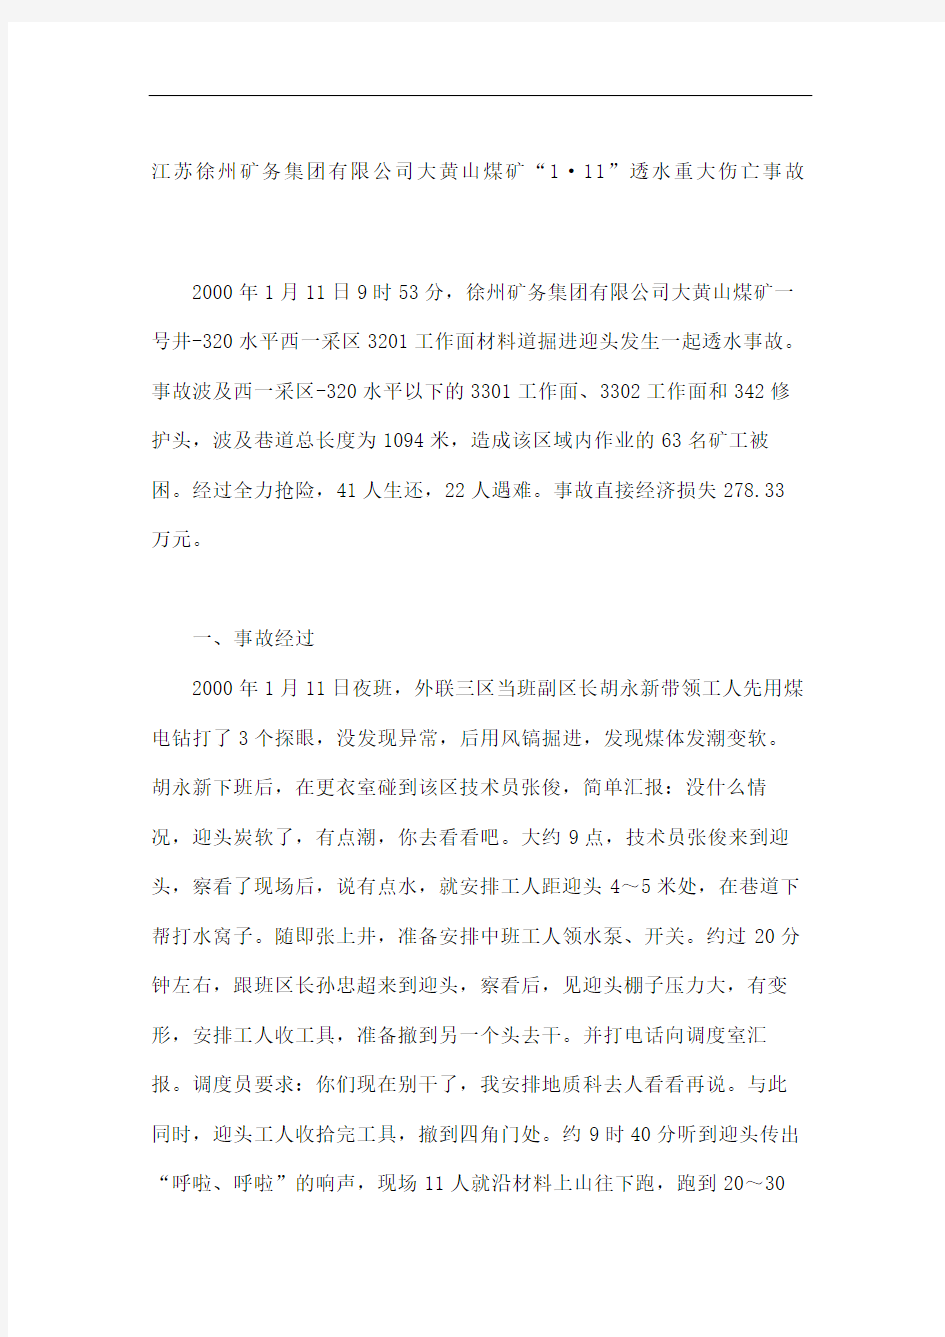 江苏徐州矿务集团公司大黄山煤矿透水重大伤亡事故